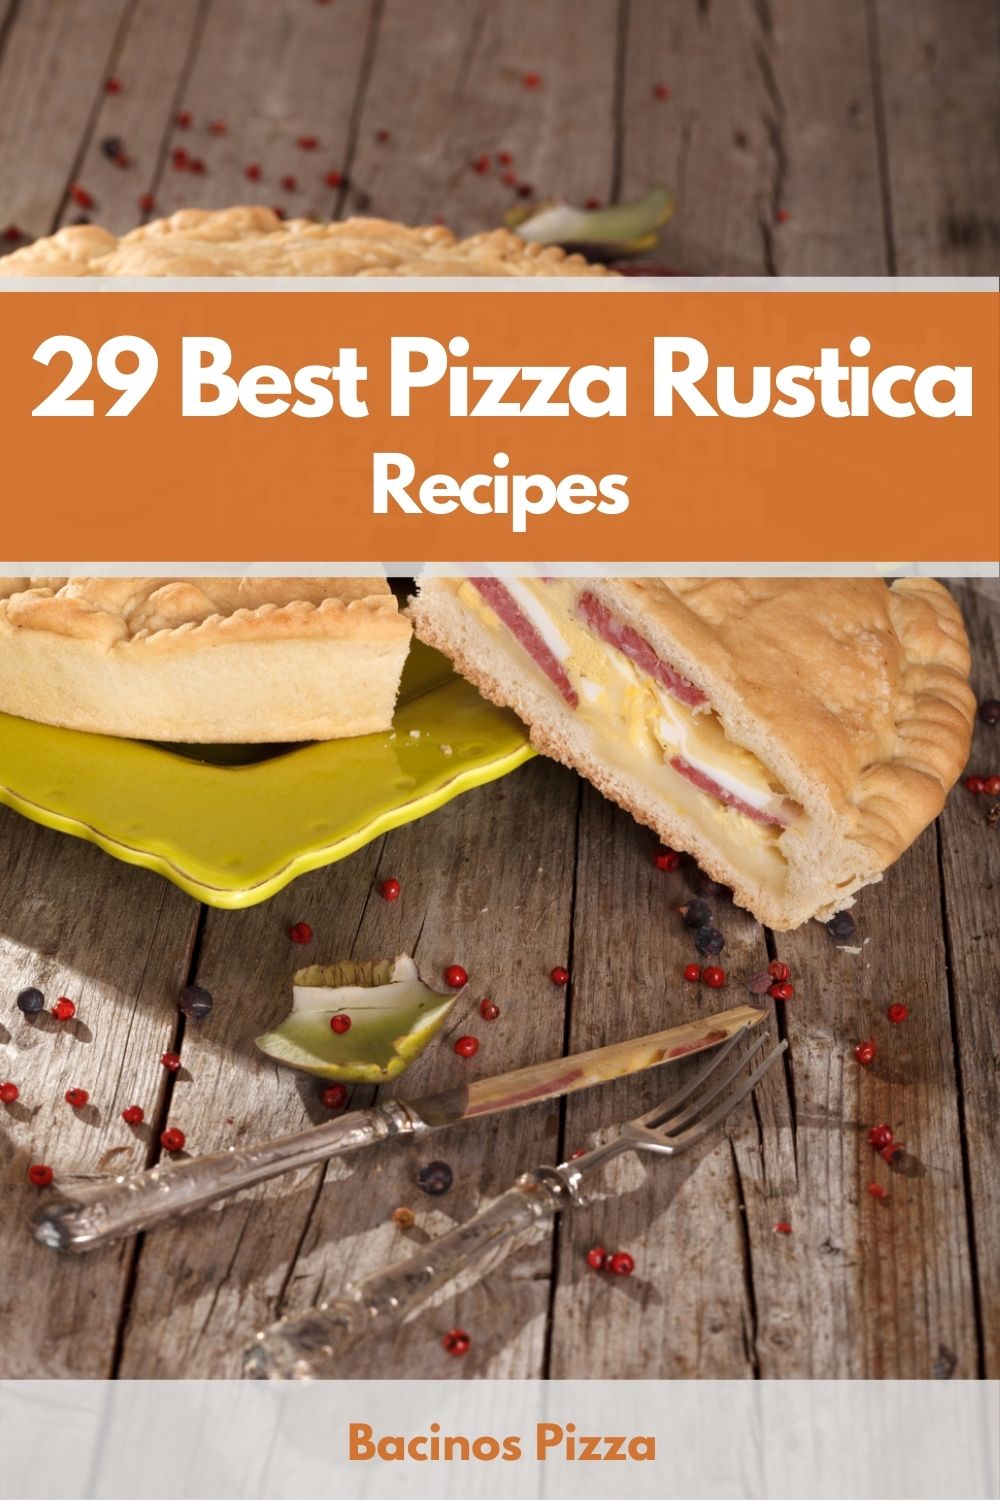 29 Best Pizza Rustica Recipes pin